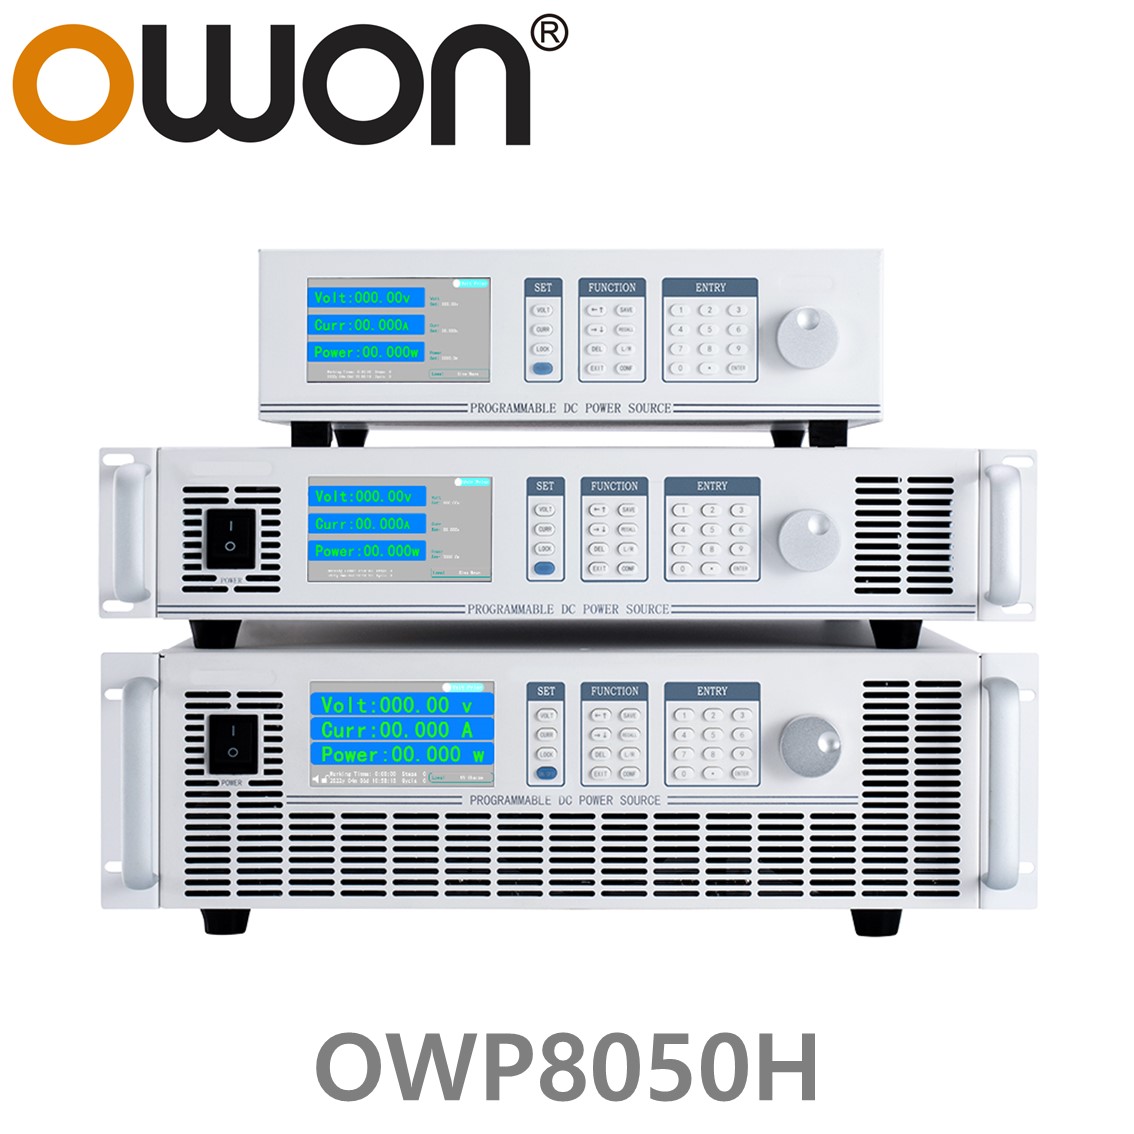 [ OWON ] OWP8050H 고전력 DC파워서플라이, 0-500.00V / 0-20.000A / 8000.0W DC전원공급장치